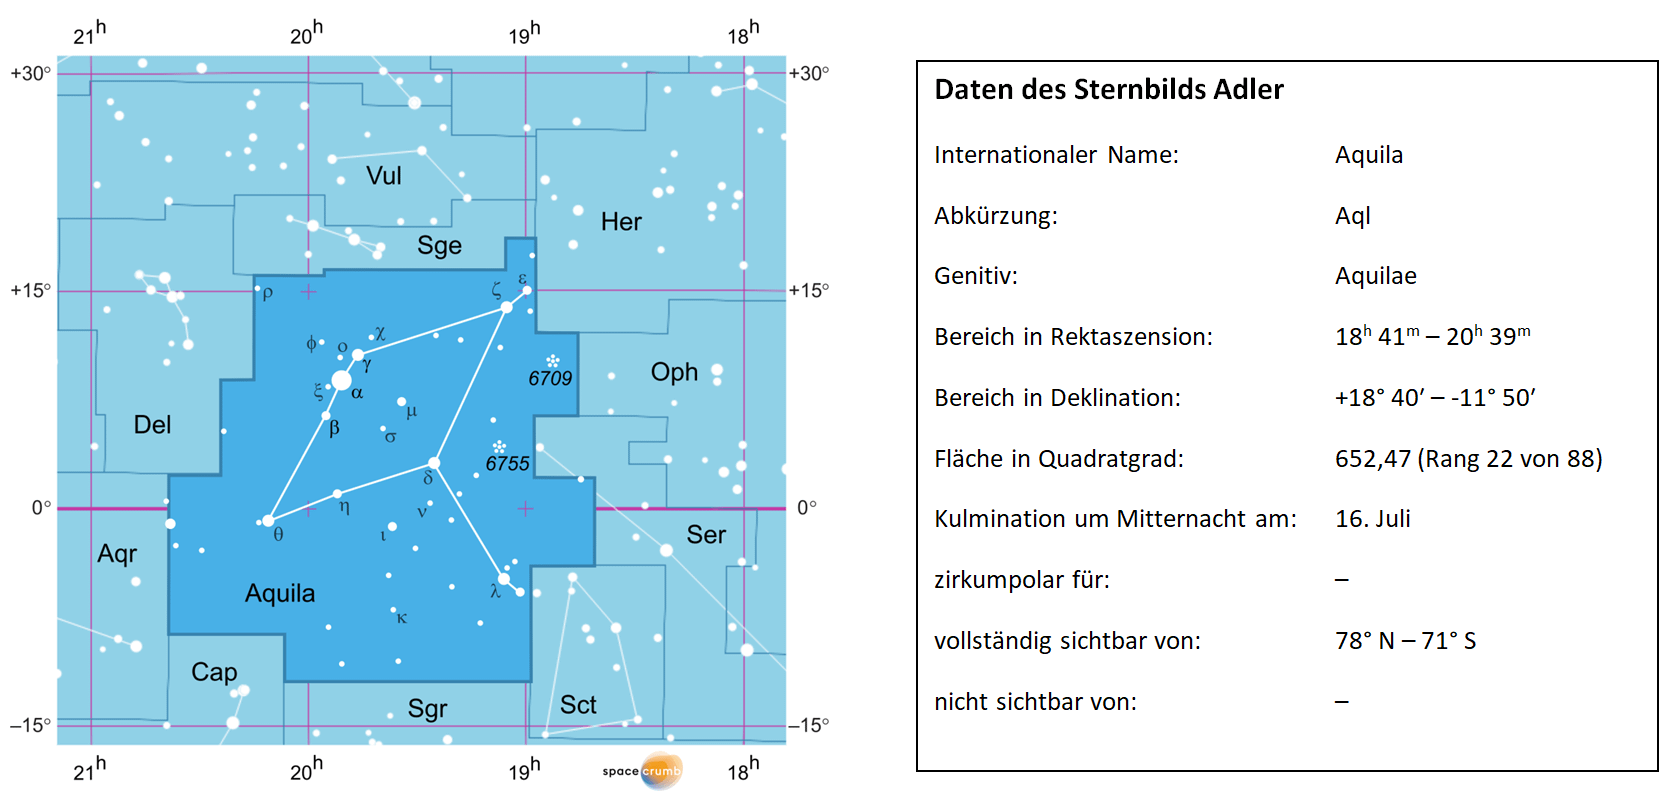 Links zeigt eine mit Koordinaten versehene Karte eines Himmelsausschnitts weiße Sterne auf hellblauem Hintergrund. Die Fläche, die das Sternbild Adler einnimmt, ist dunkelblau hervorgehoben. Eine Tabelle rechts gibt wichtige Daten des Sternbilds an.